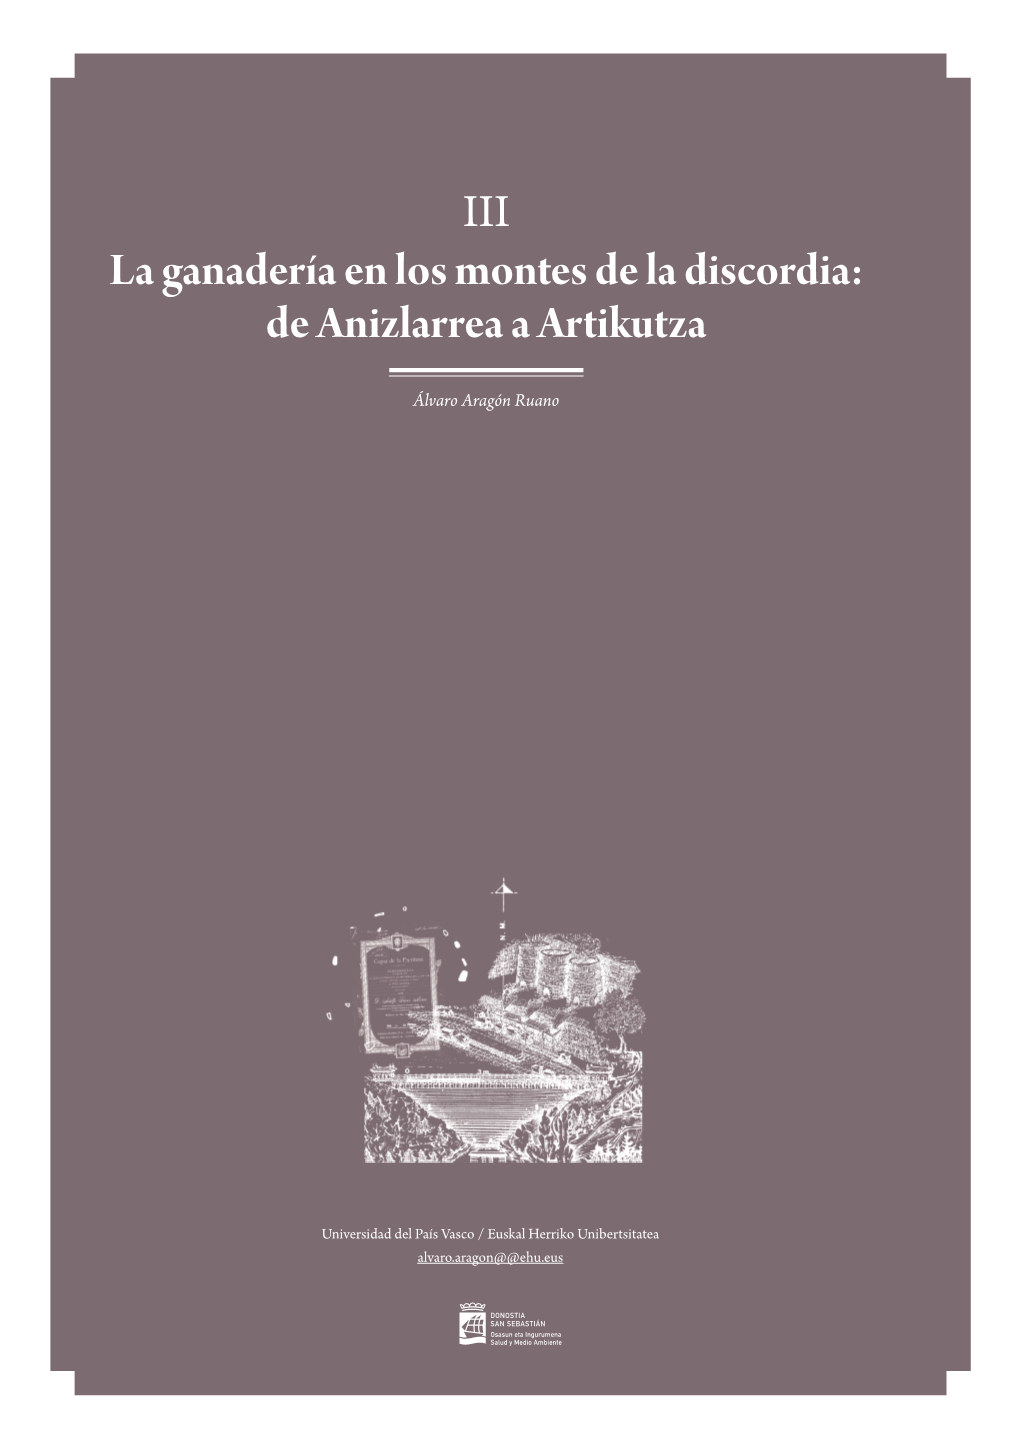 III La Ganadería En Los Montes De La Discordia: De Anizlarrea a Artikutza